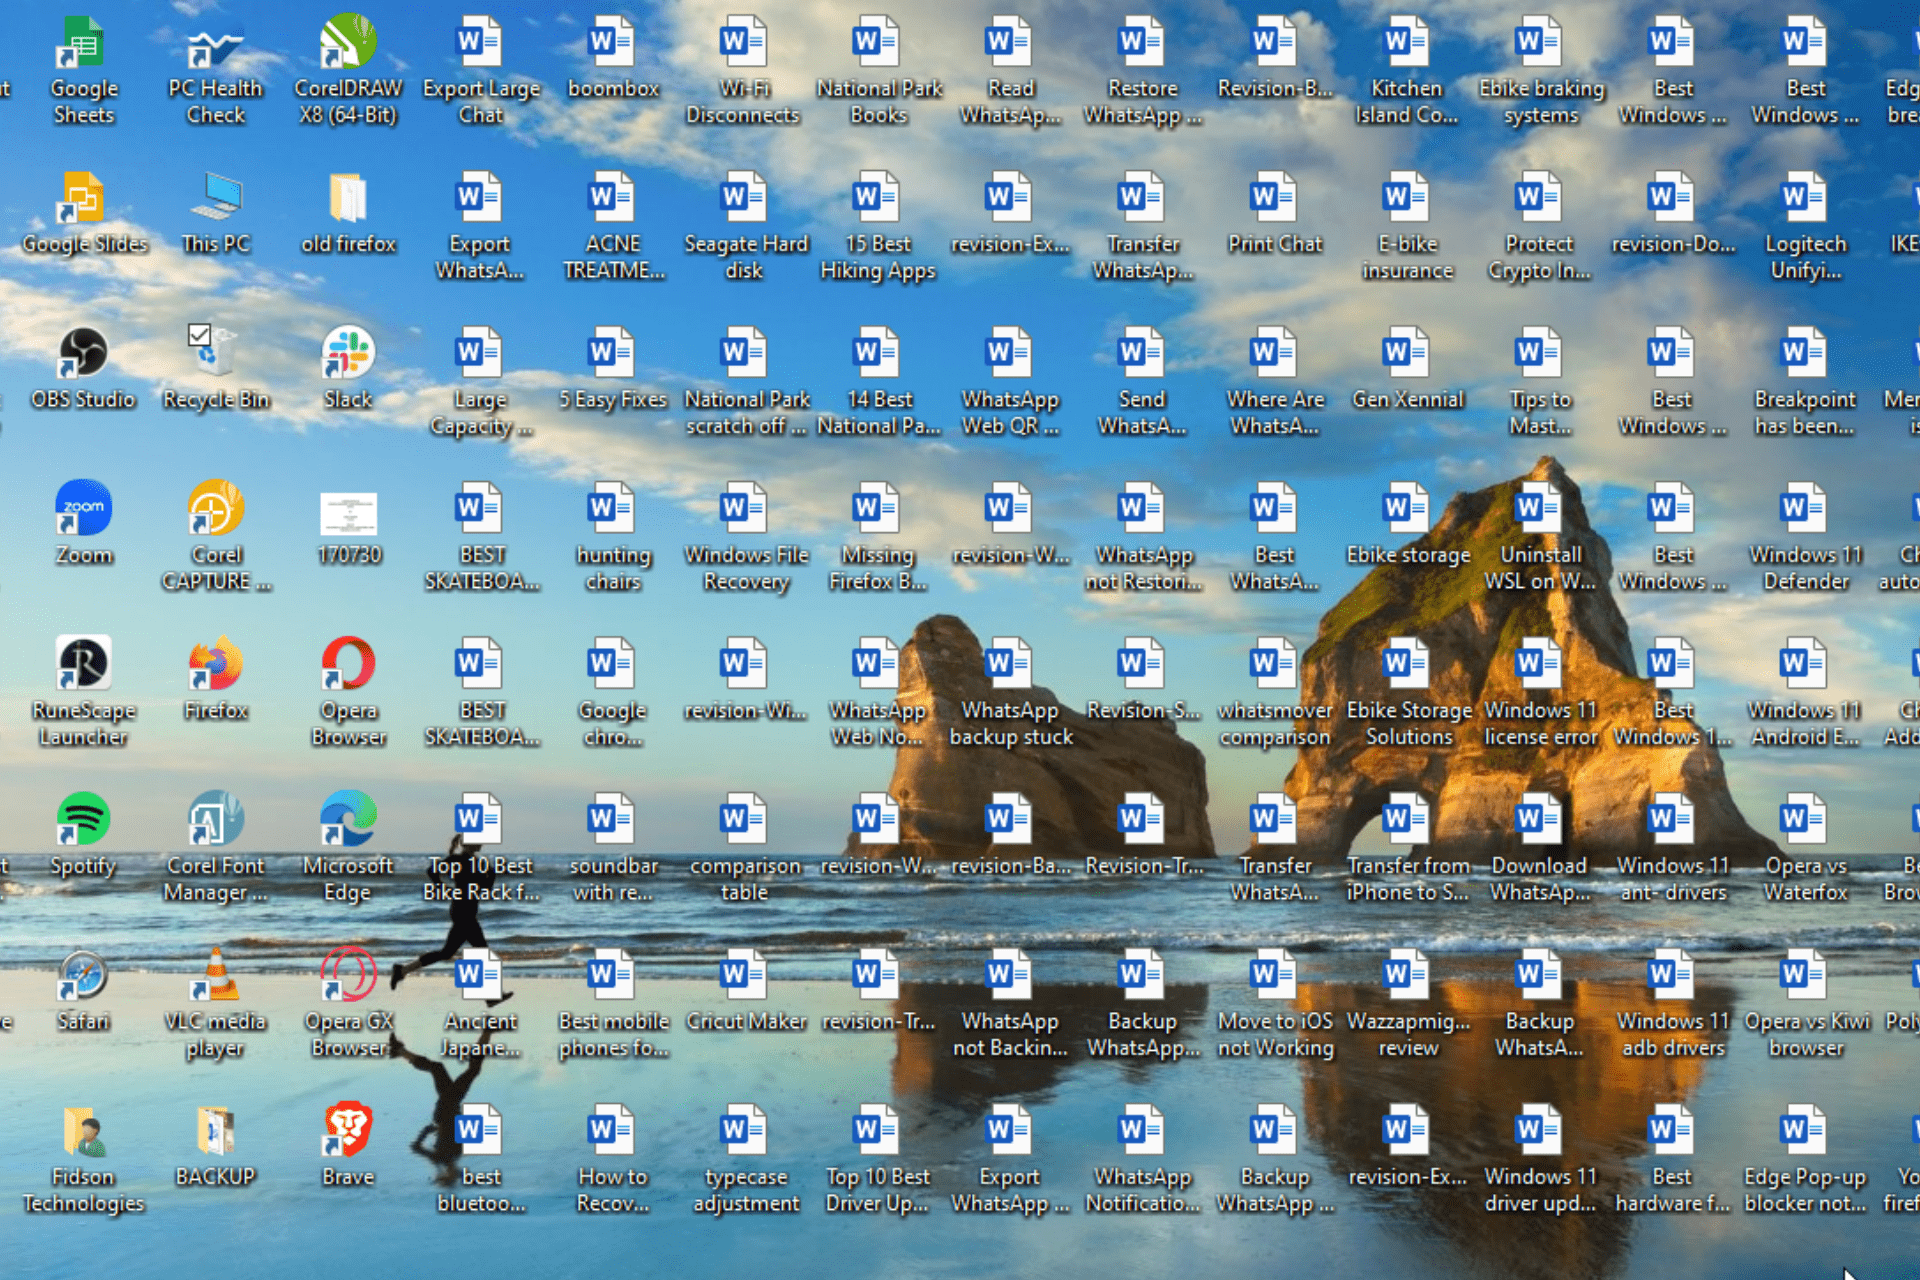 Nếu bạn gặp sự cố với biểu tượng màn hình Desktop và chúng không xuất hiện trên Windows 10 của bạn, đừng lo lắng. Chỉ với vài thao tác đơn giản, bạn có thể dễ dàng khắc phục lỗi này. Hãy xem hình ảnh liên quan để biết thêm chi tiết và tìm hiểu cách khắc phục lỗi một cách nhanh chóng và hiệu quả!